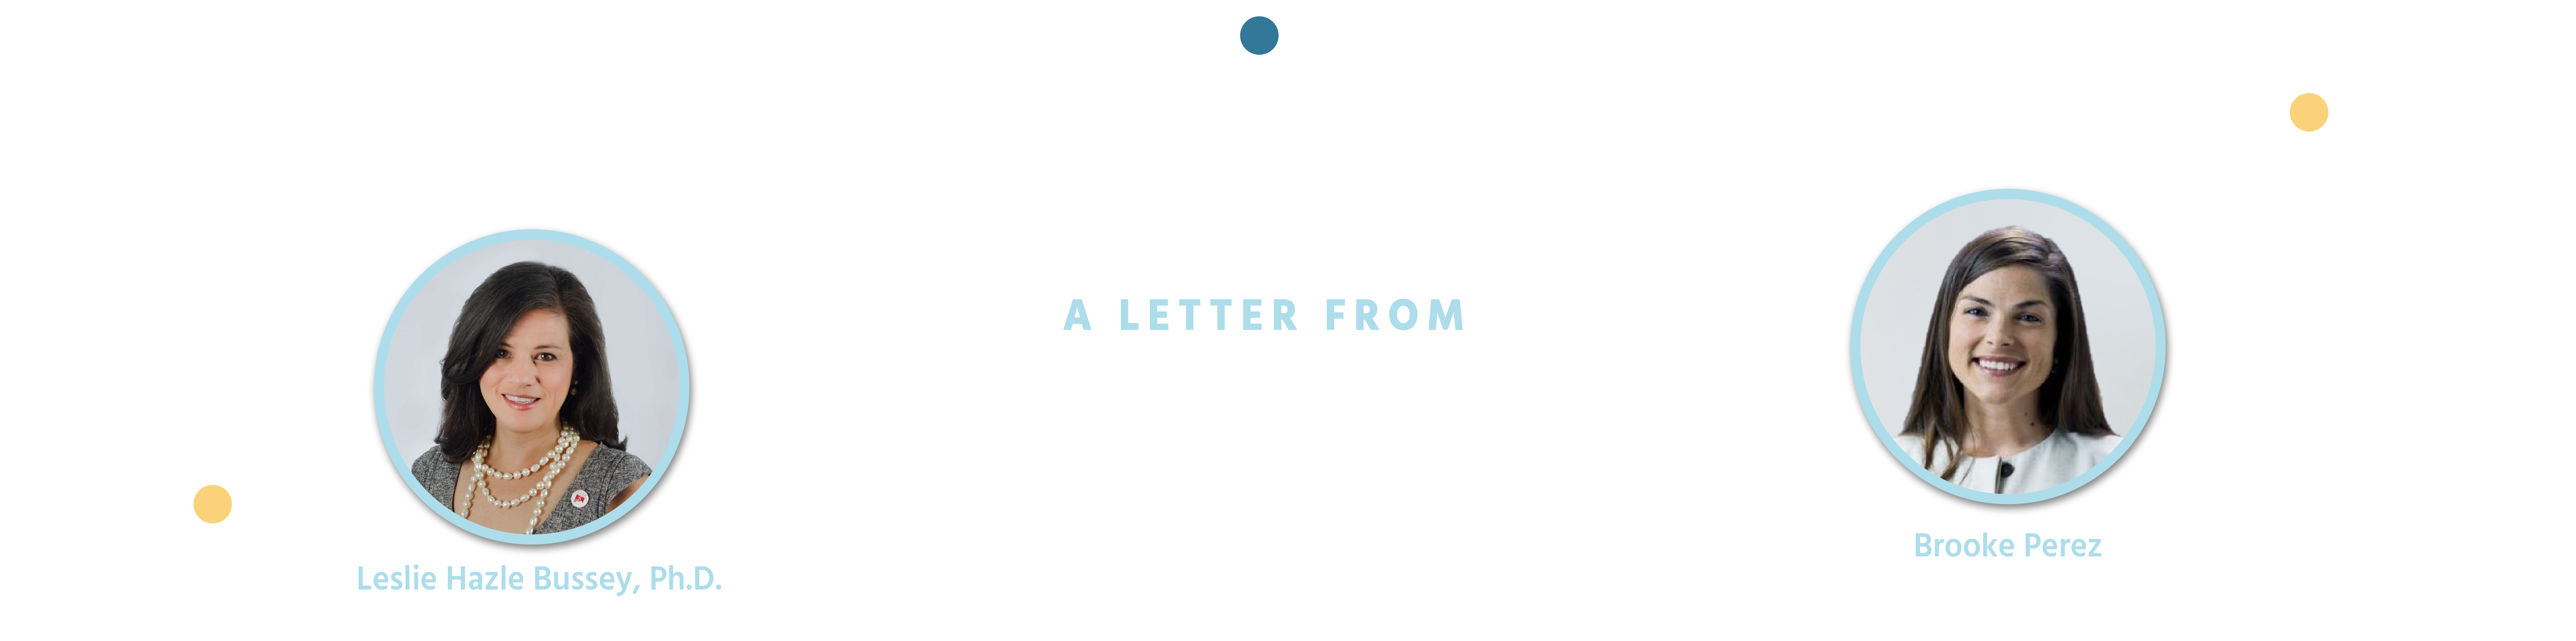 Letter Header Final v2-01